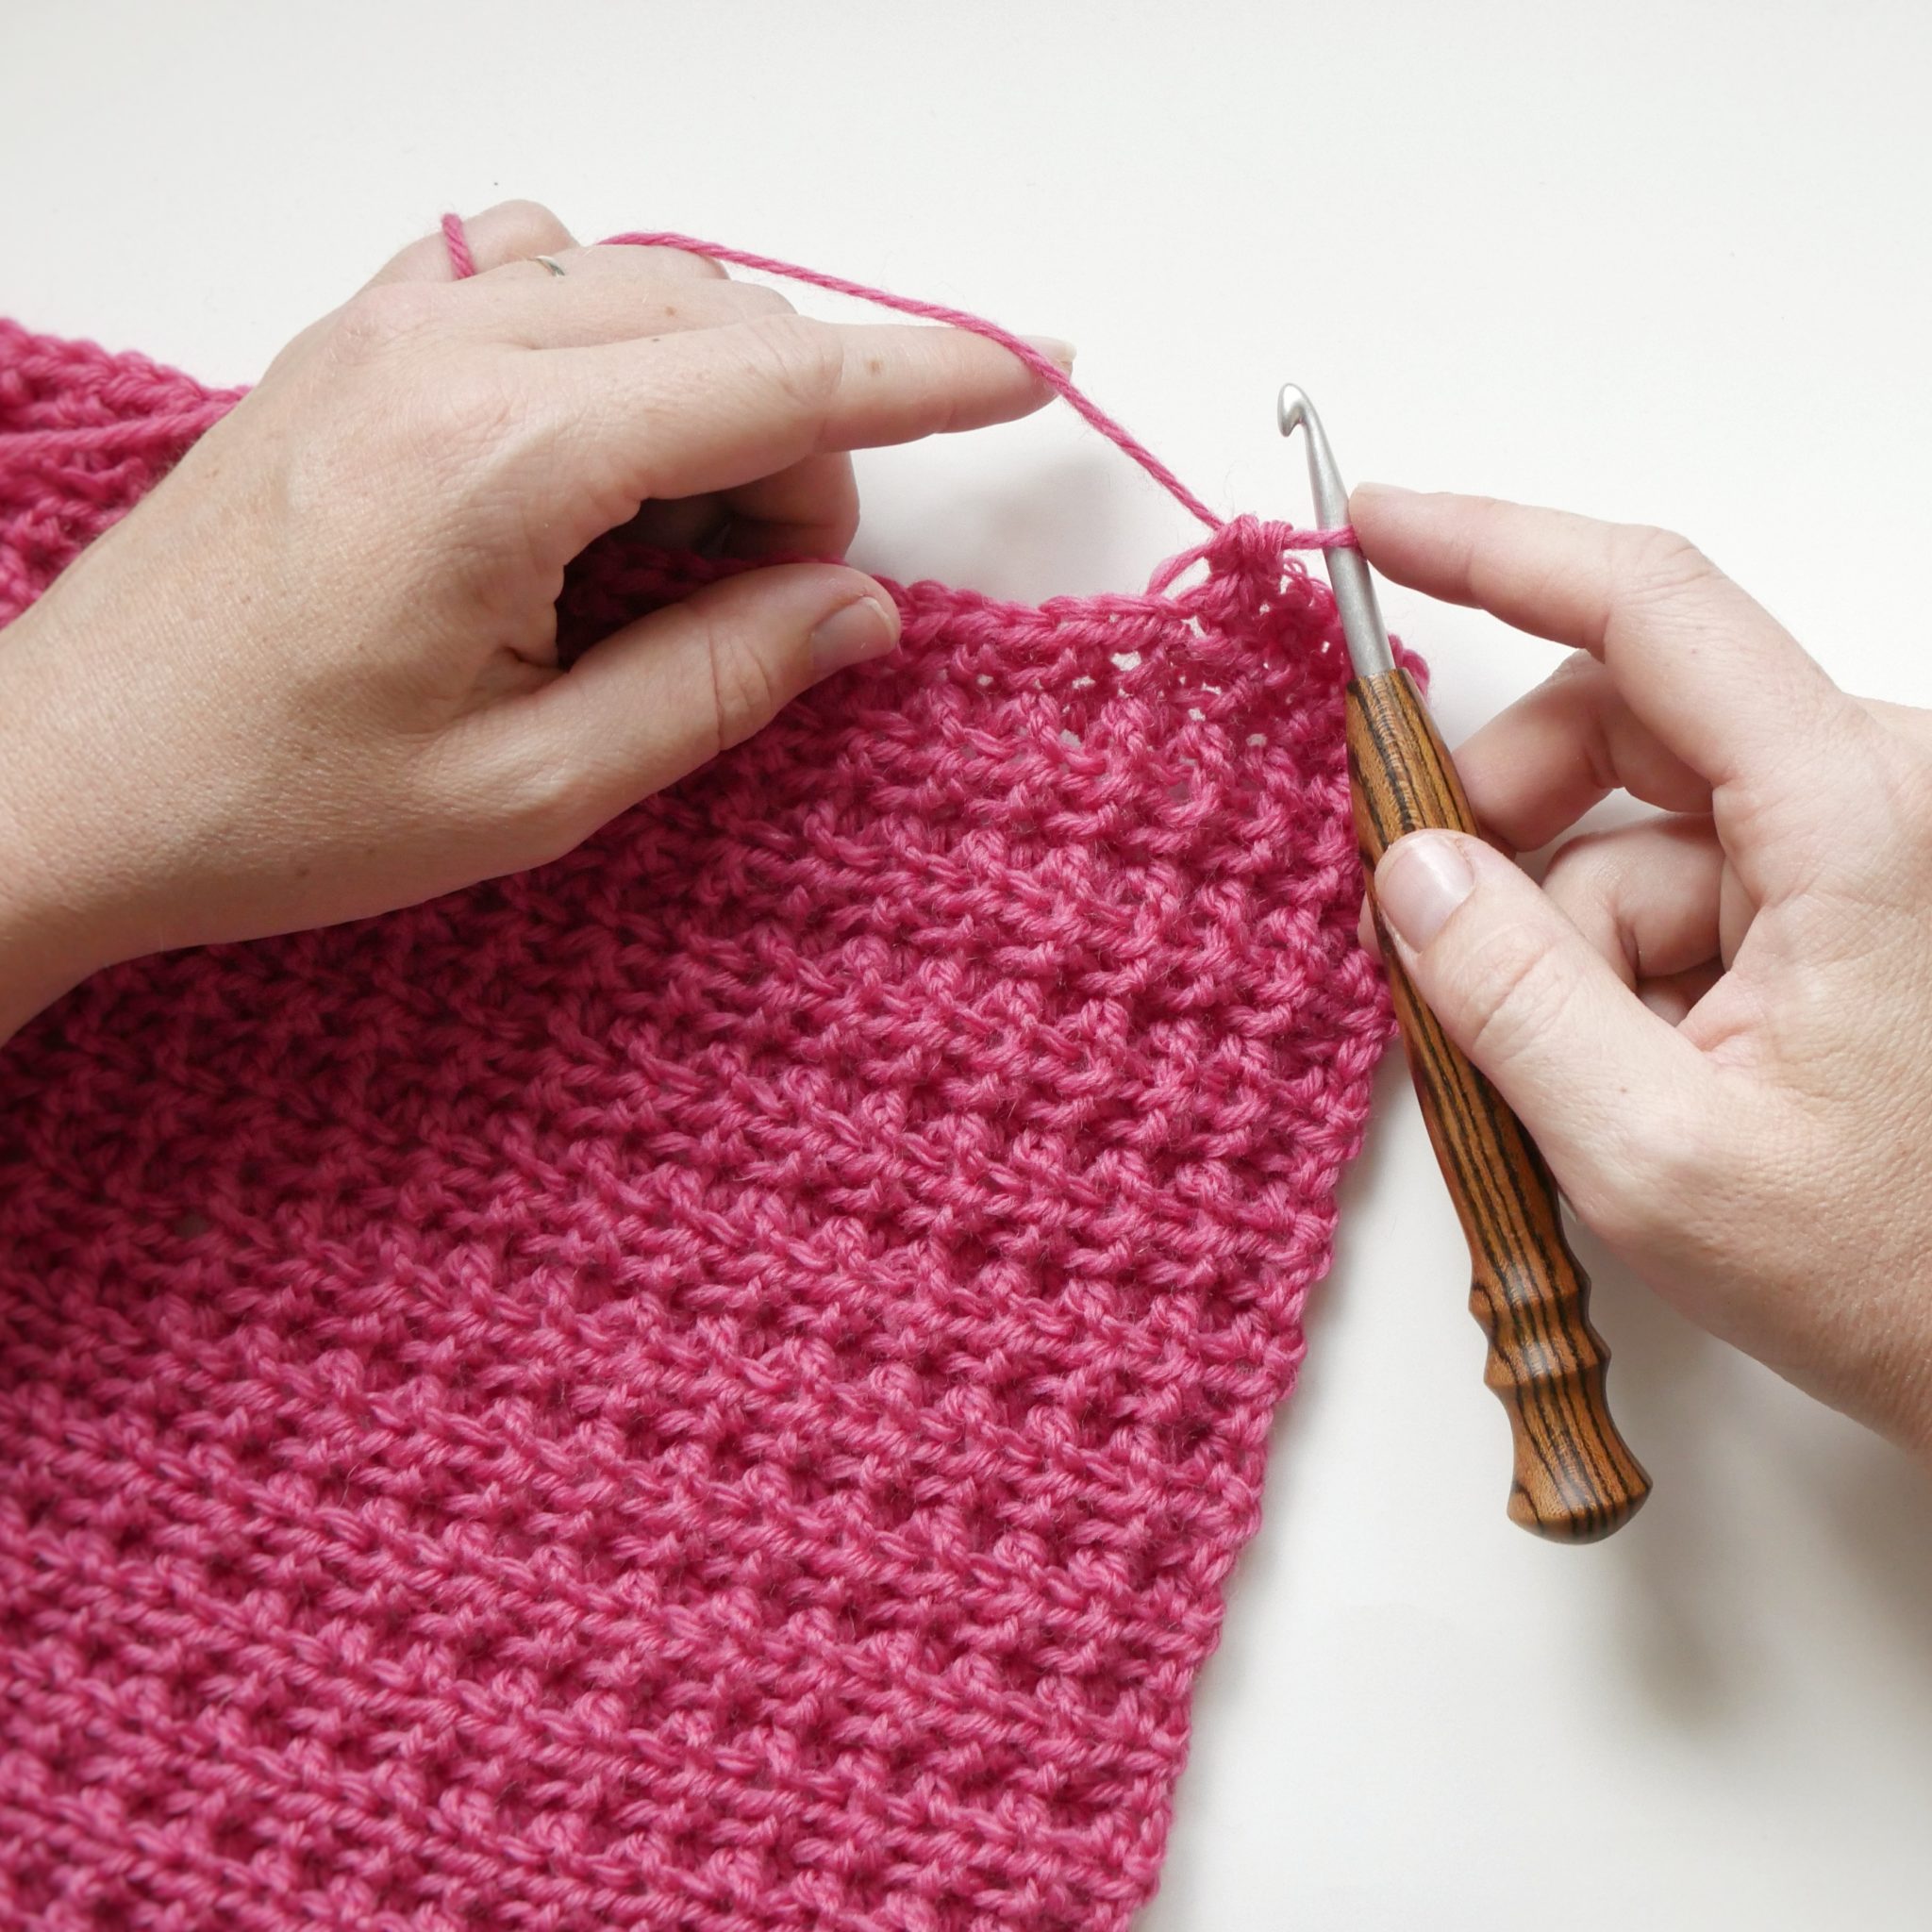 HOW TO CROCHET Half Double Crochet Front Loop and Back Loop (HDC FL